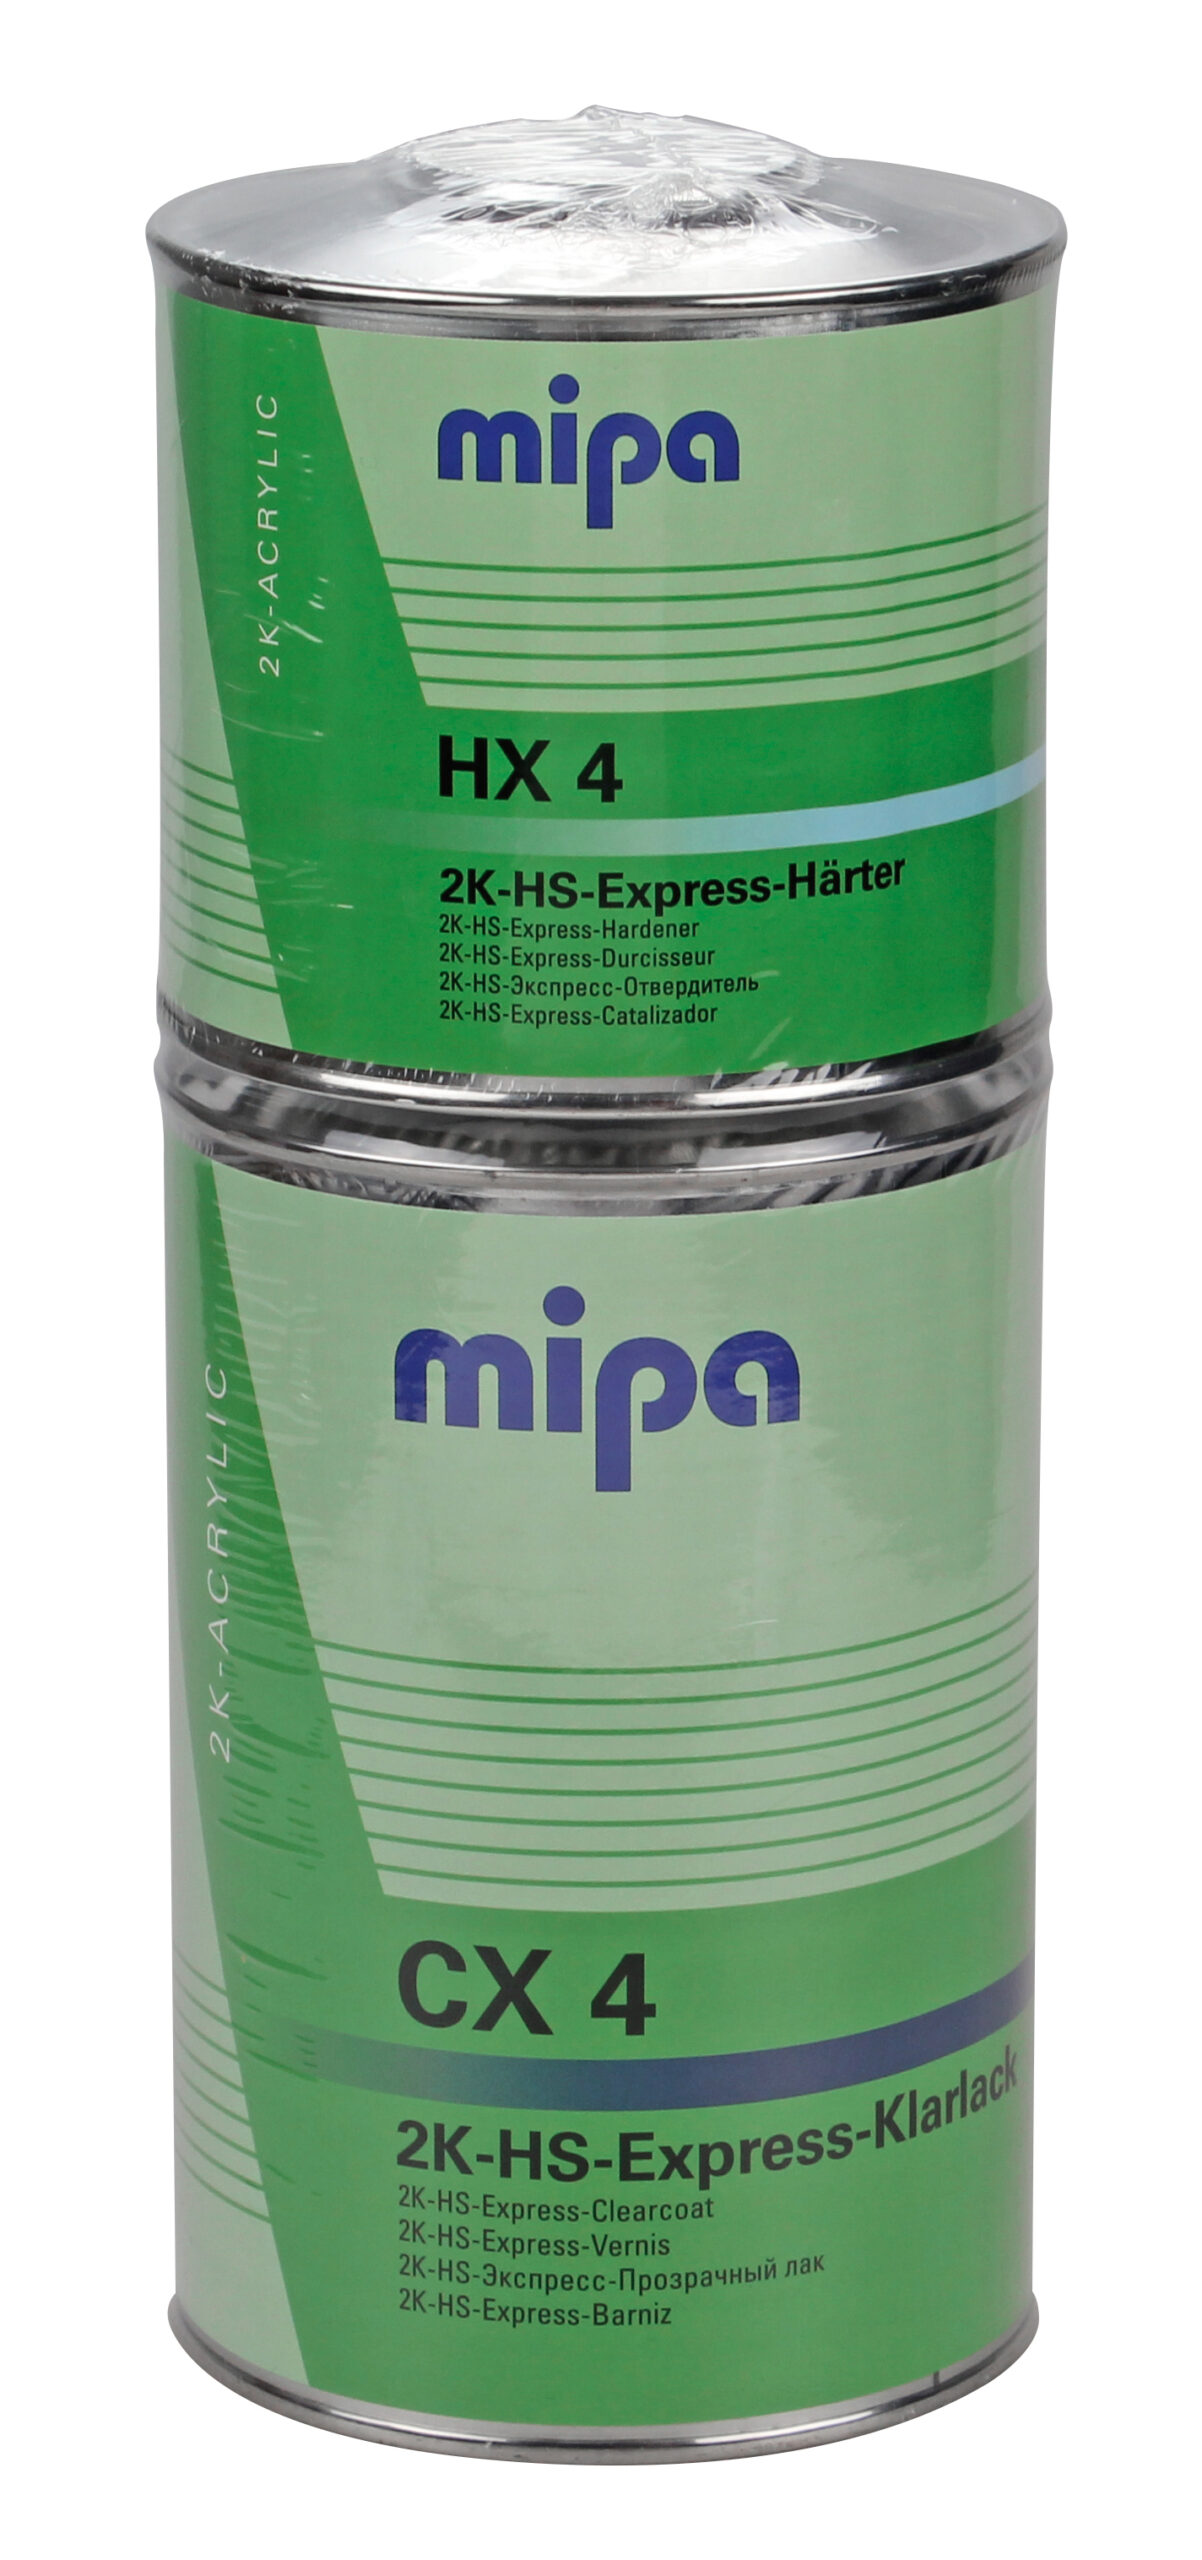 Mipa 2K-HS-Express-Klarlack